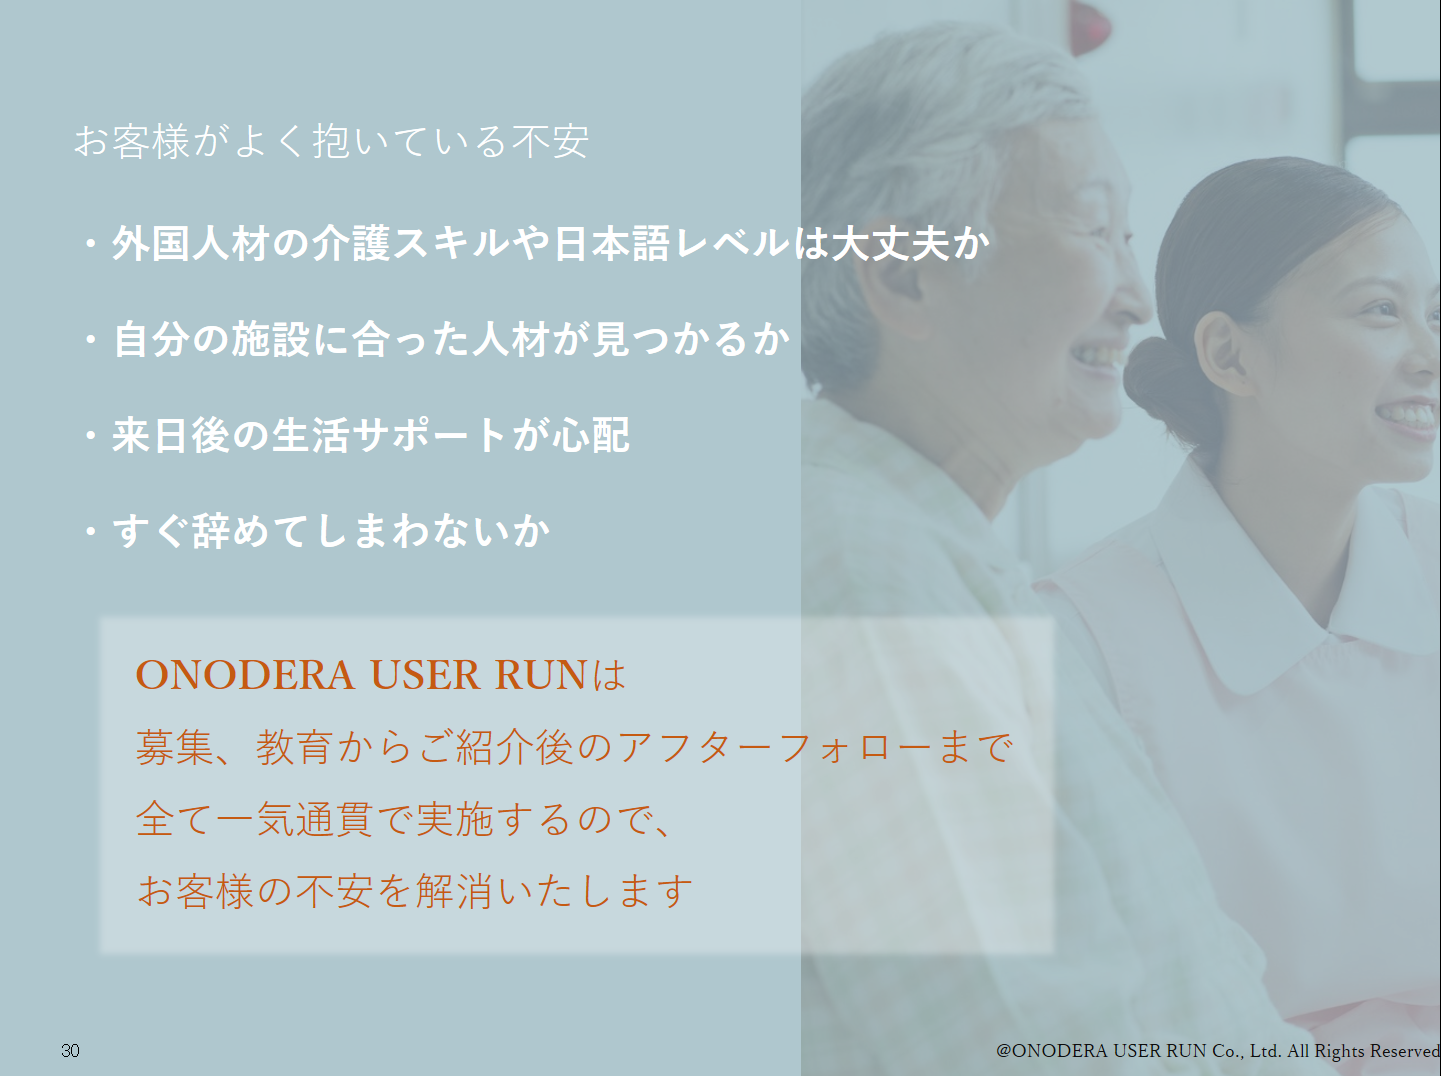 ONODERA USER RUN、オンラインシステムによる商談をスタート